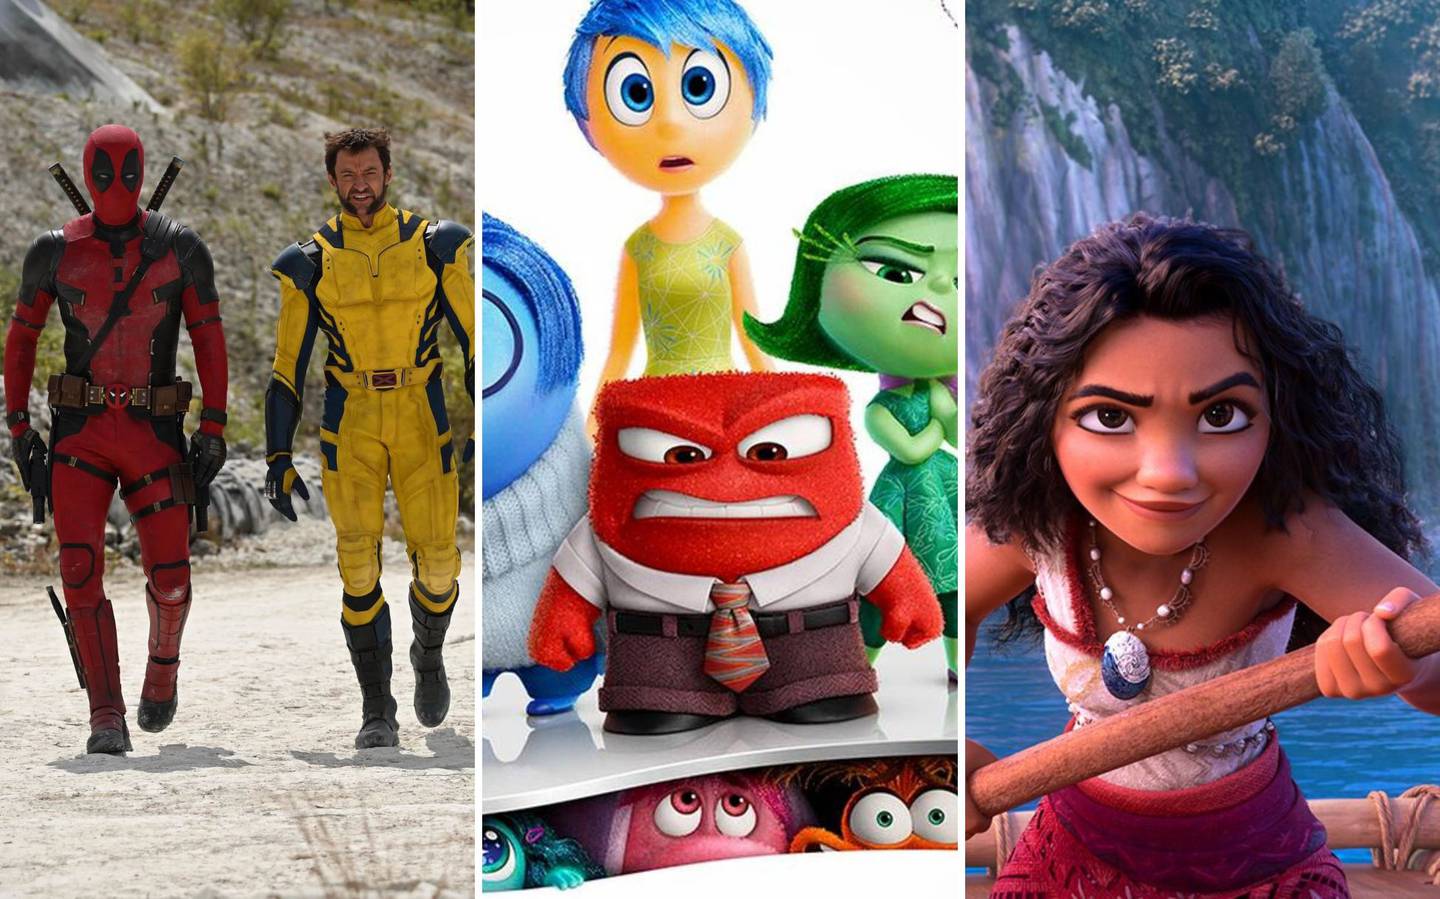 Disney presentó adelantos de algunas de sus películas más esperadas. Crédito: BGR y Disney.